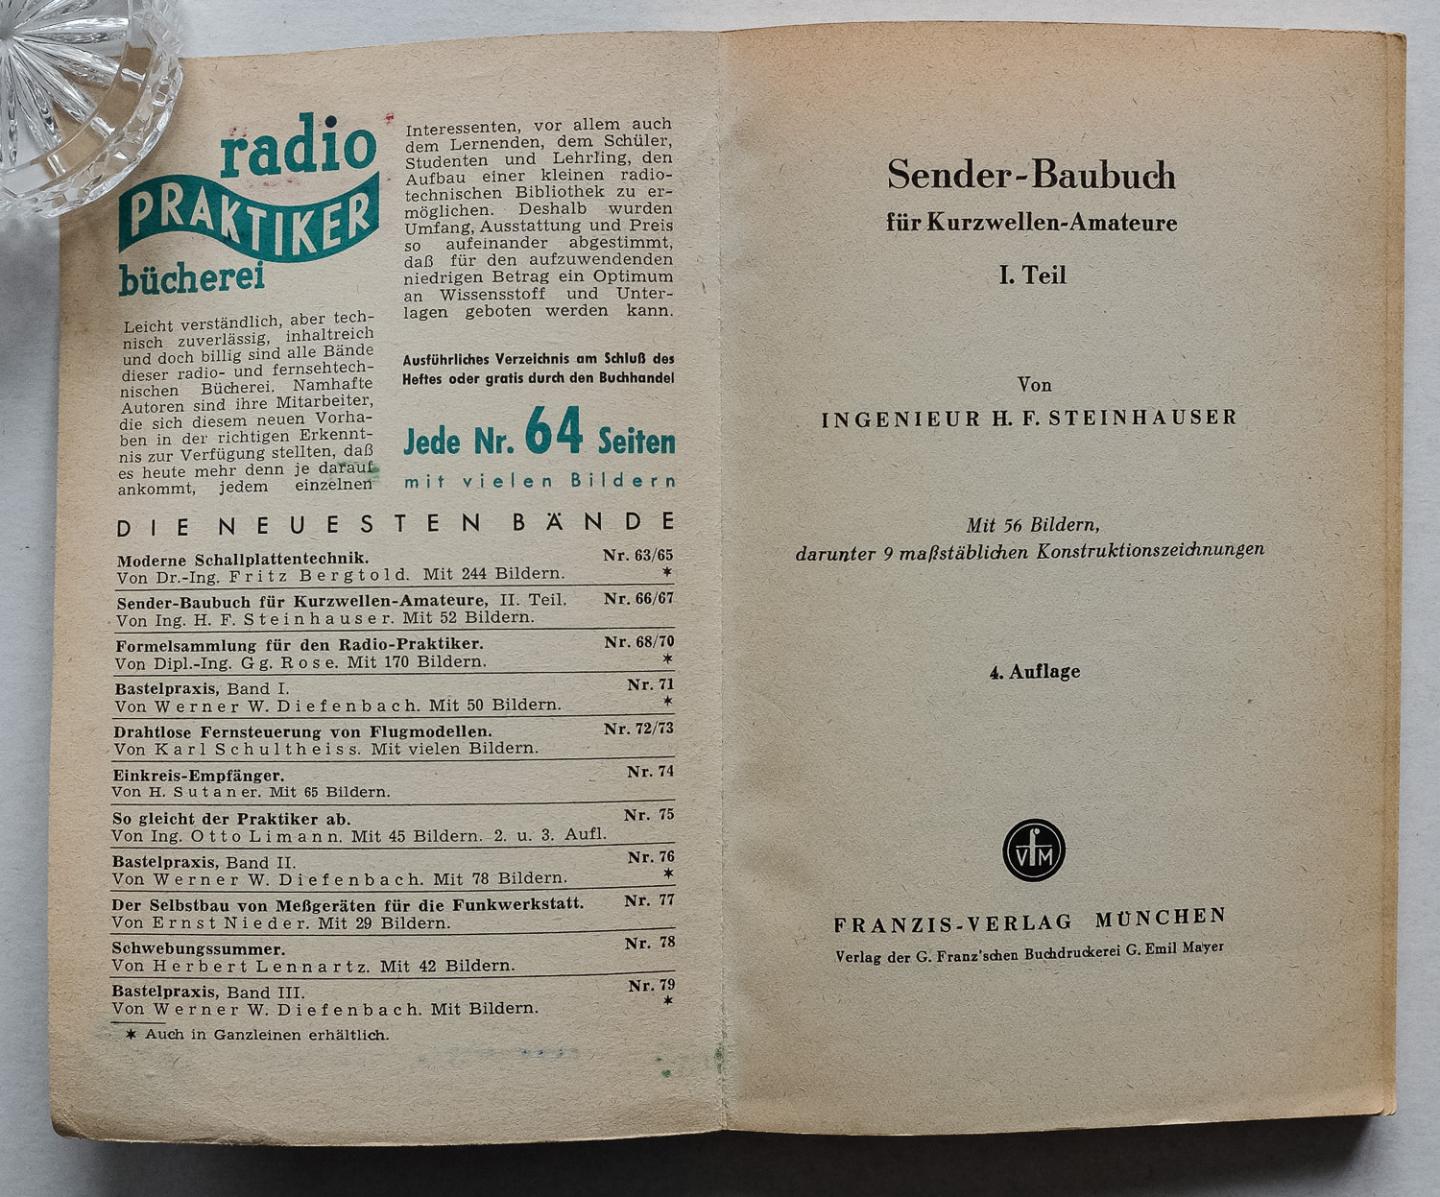 Steinhauser, H.F. - Sender-Baubuch für Kurzwellen-Amateure. Teil 1 - Mit 56 Bildern [von Carl Stumpf], darunter 9 massstäbl. Konstruktionszeichn. [von Erich Schülzke]